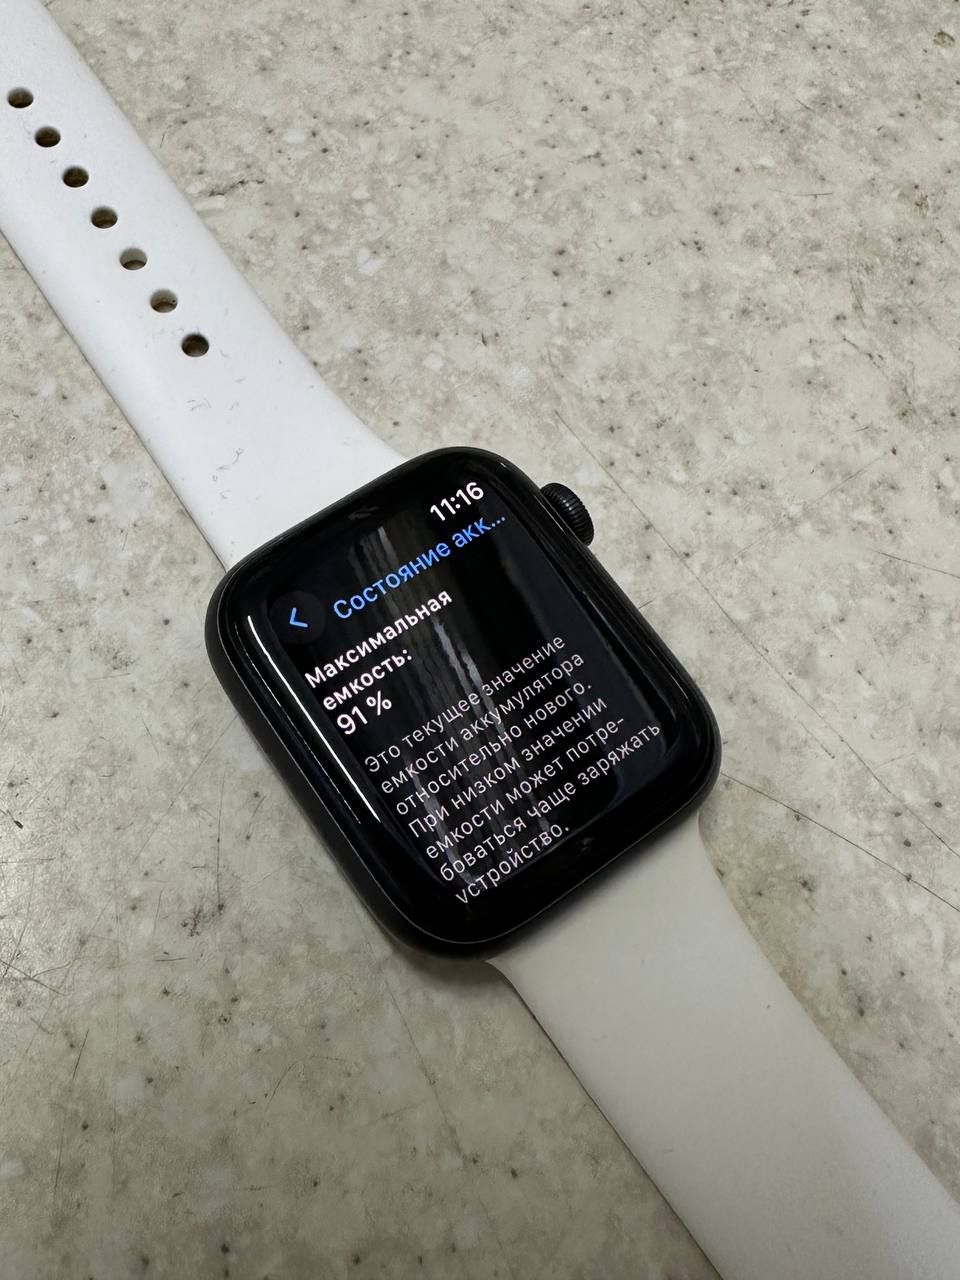 Apple Watch SE 44mm.